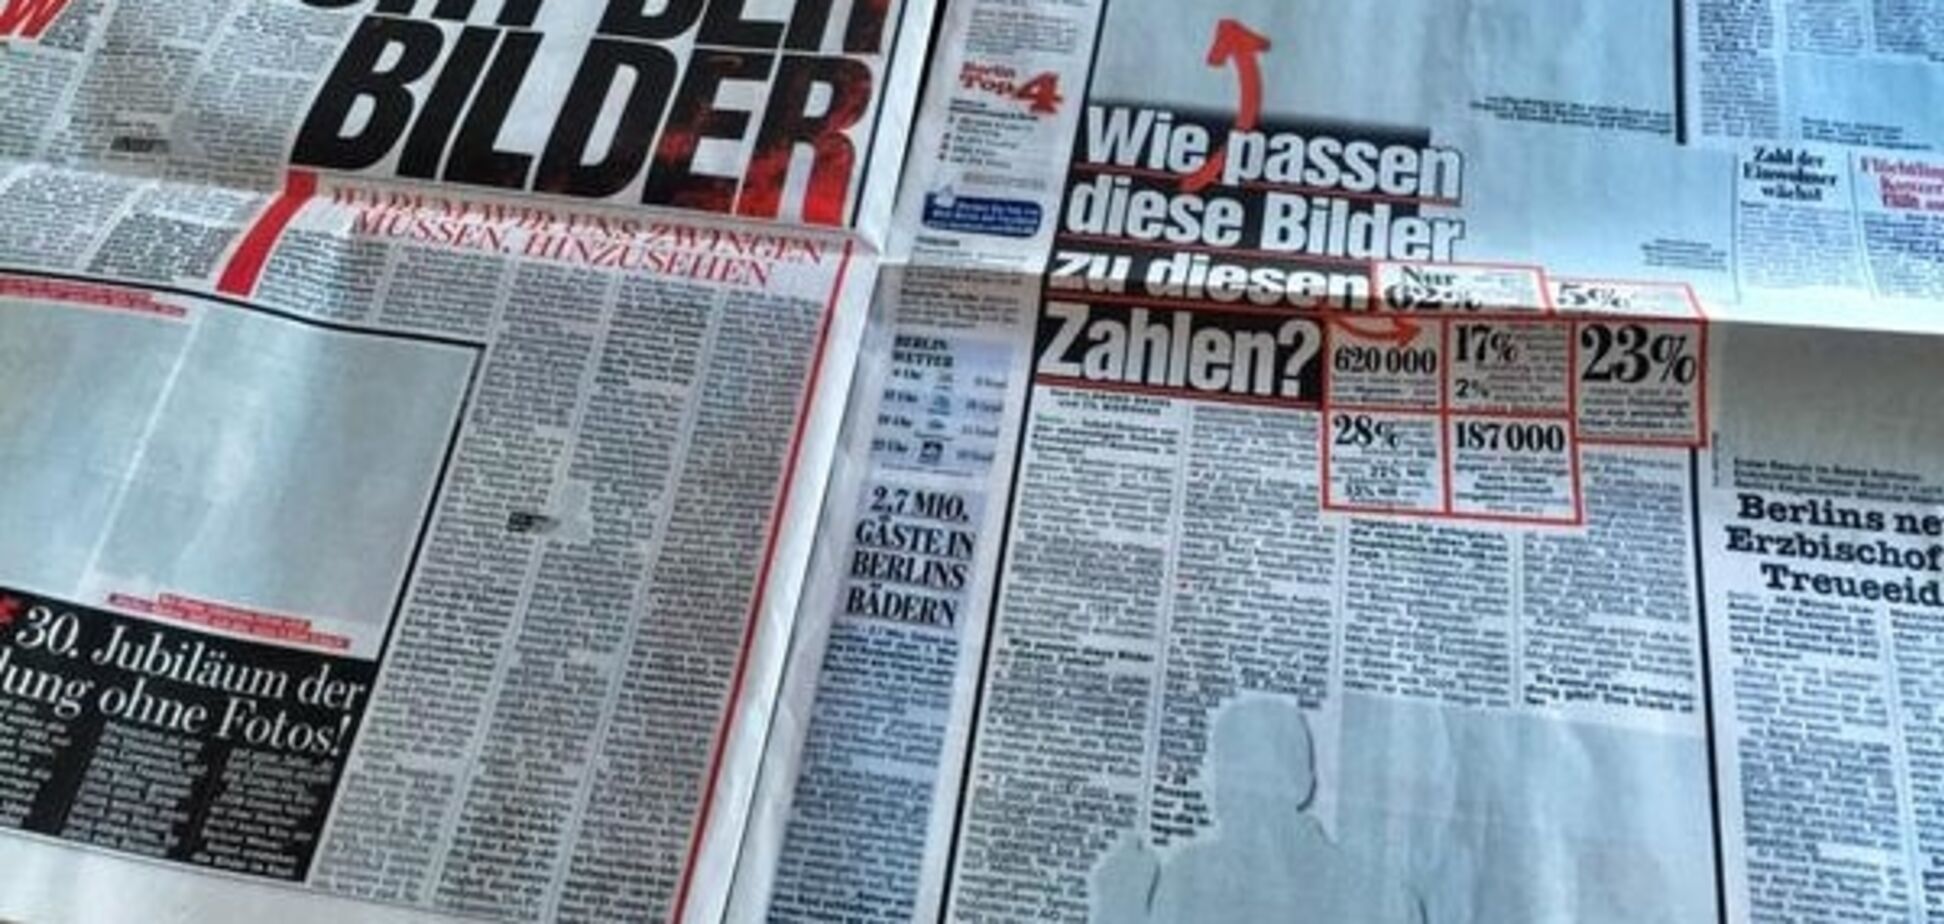 Німецьке видання відреагувало на критику фото мертвого хлопчика